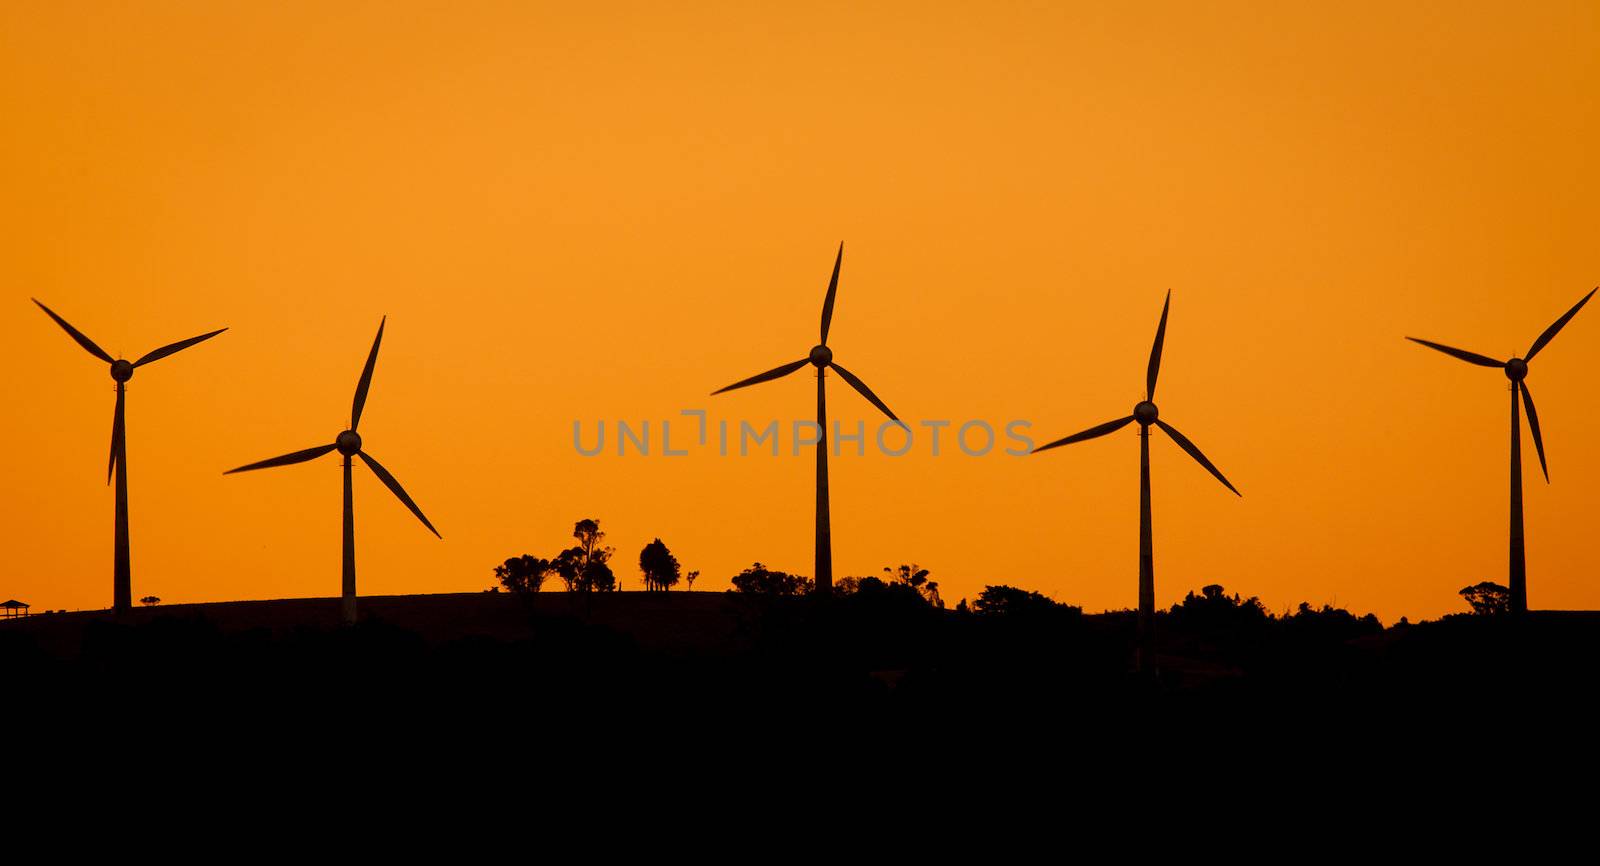 Windfarm at sunset by Jaykayl